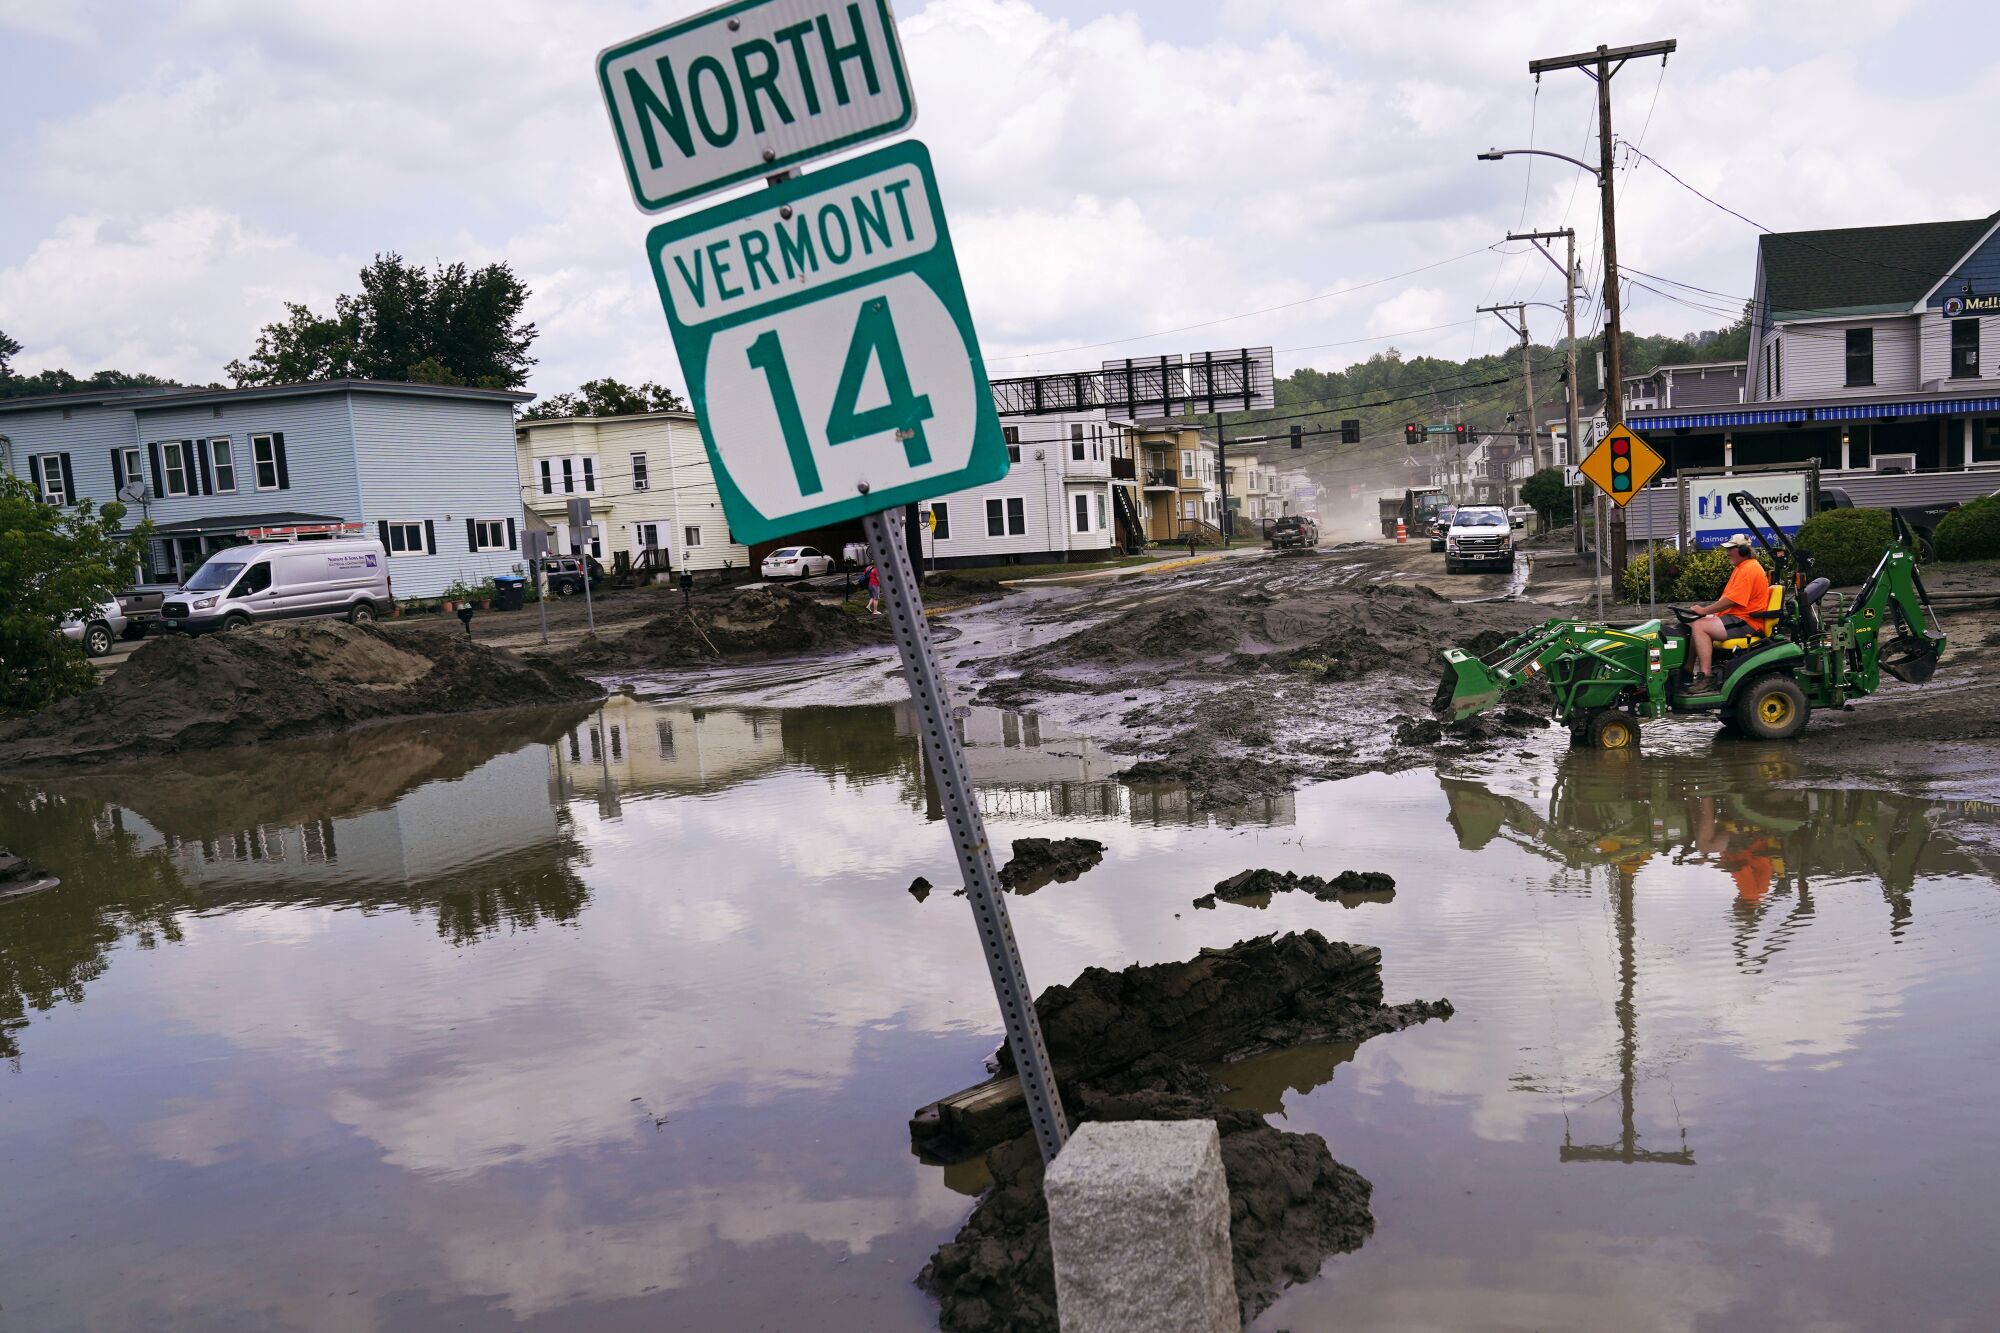 Un pequeño tractor viaja a través del lodo junto a las inundaciones que sumergen parcialmente un letrero que dice "Norte de Vermont 14."